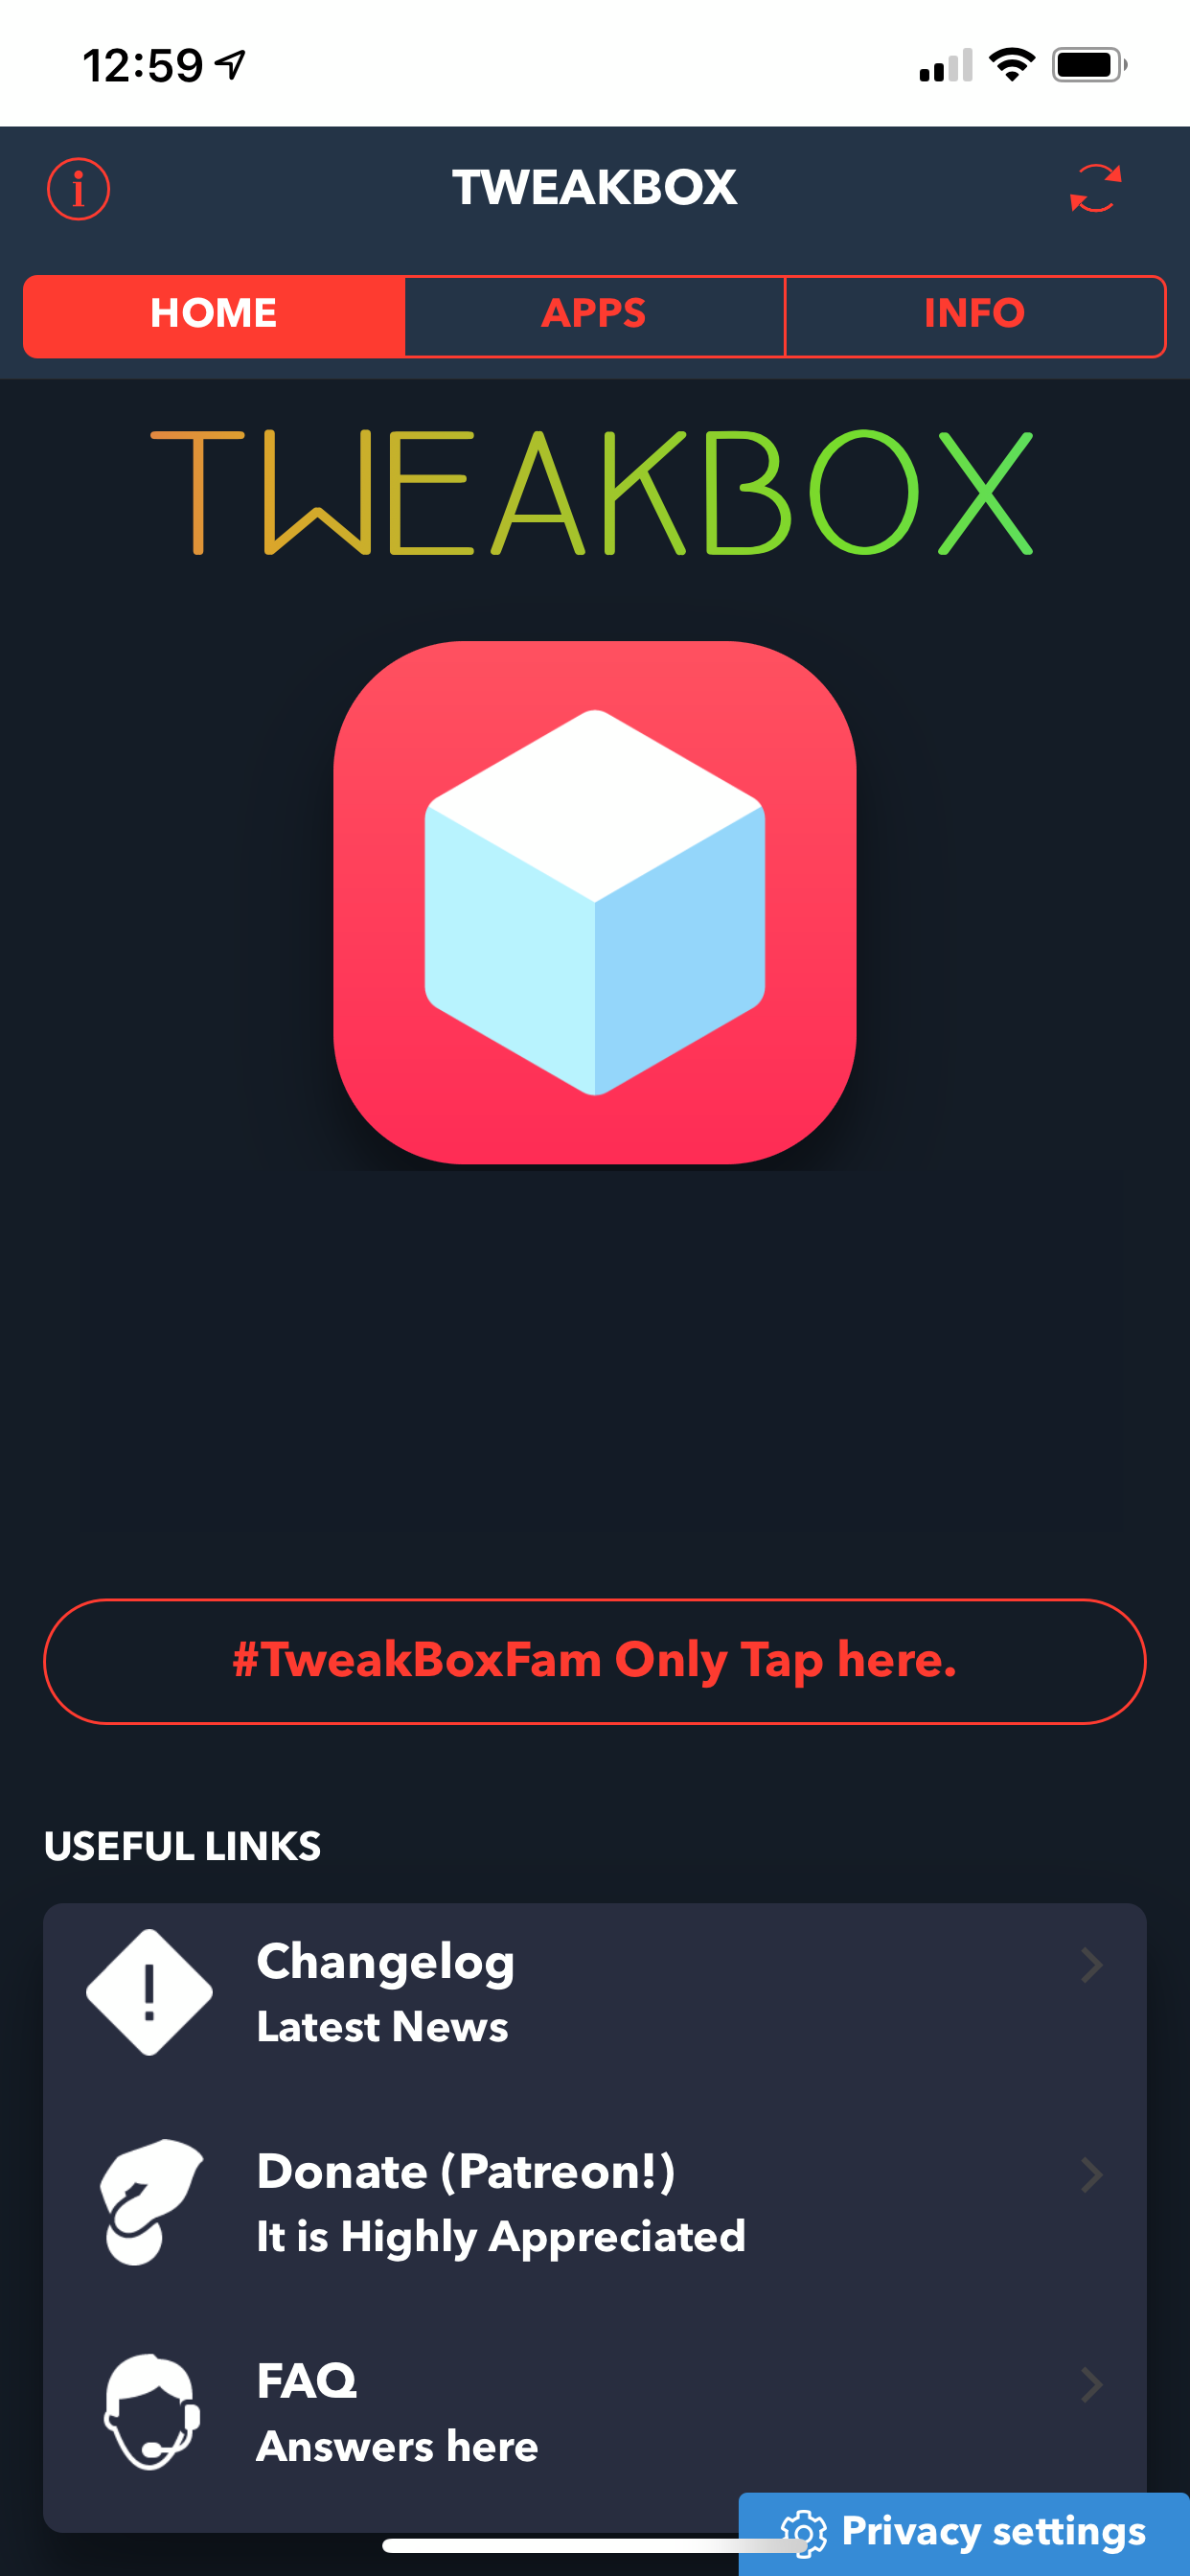 Tweakbox apps free